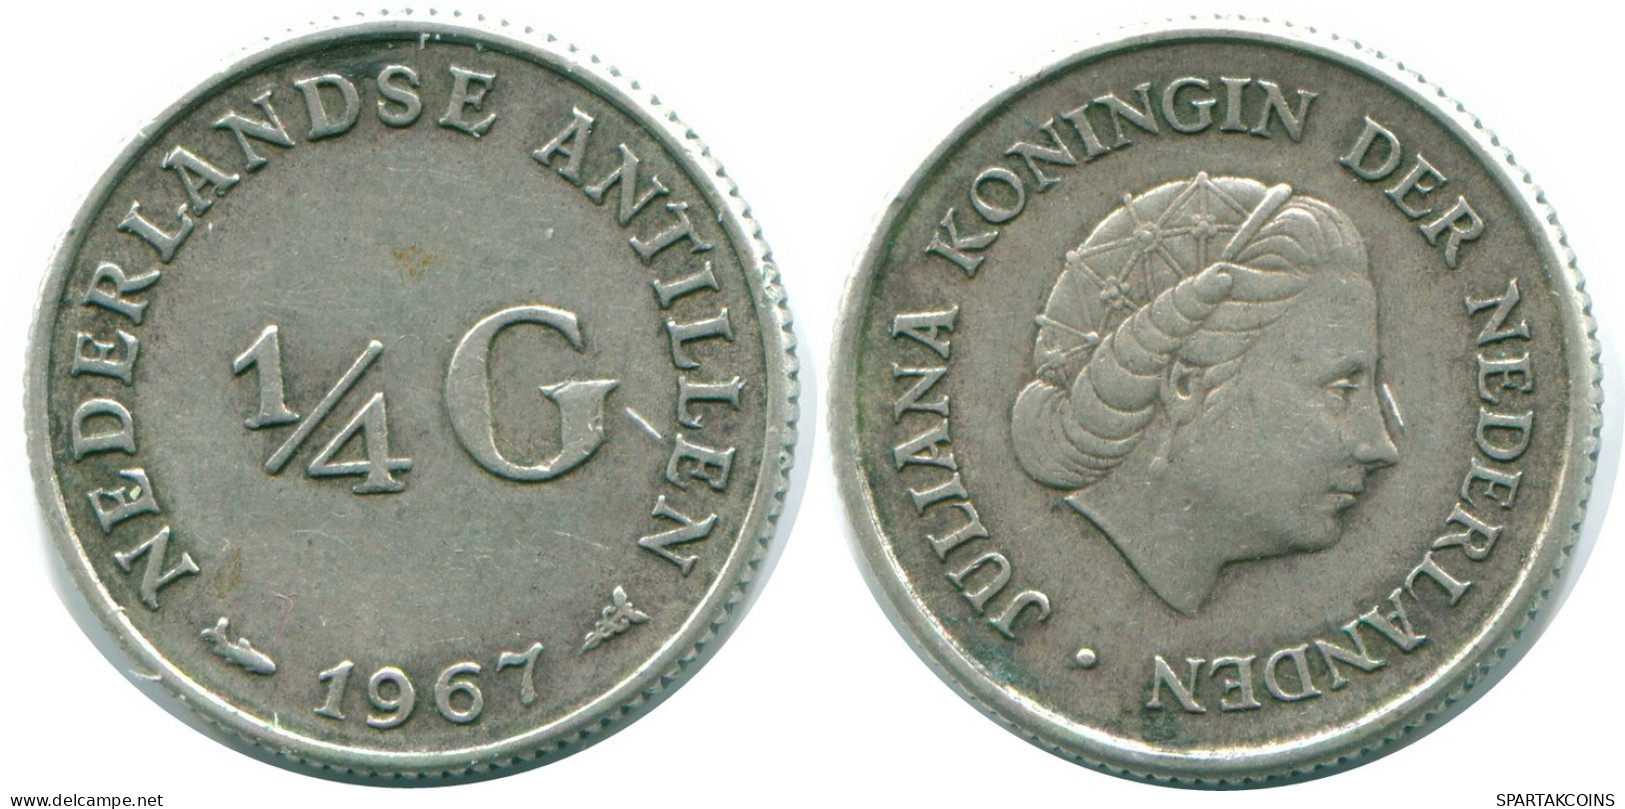 1/4 GULDEN 1967 NIEDERLÄNDISCHE ANTILLEN SILBER Koloniale Münze #NL11590.4.D.A - Nederlandse Antillen